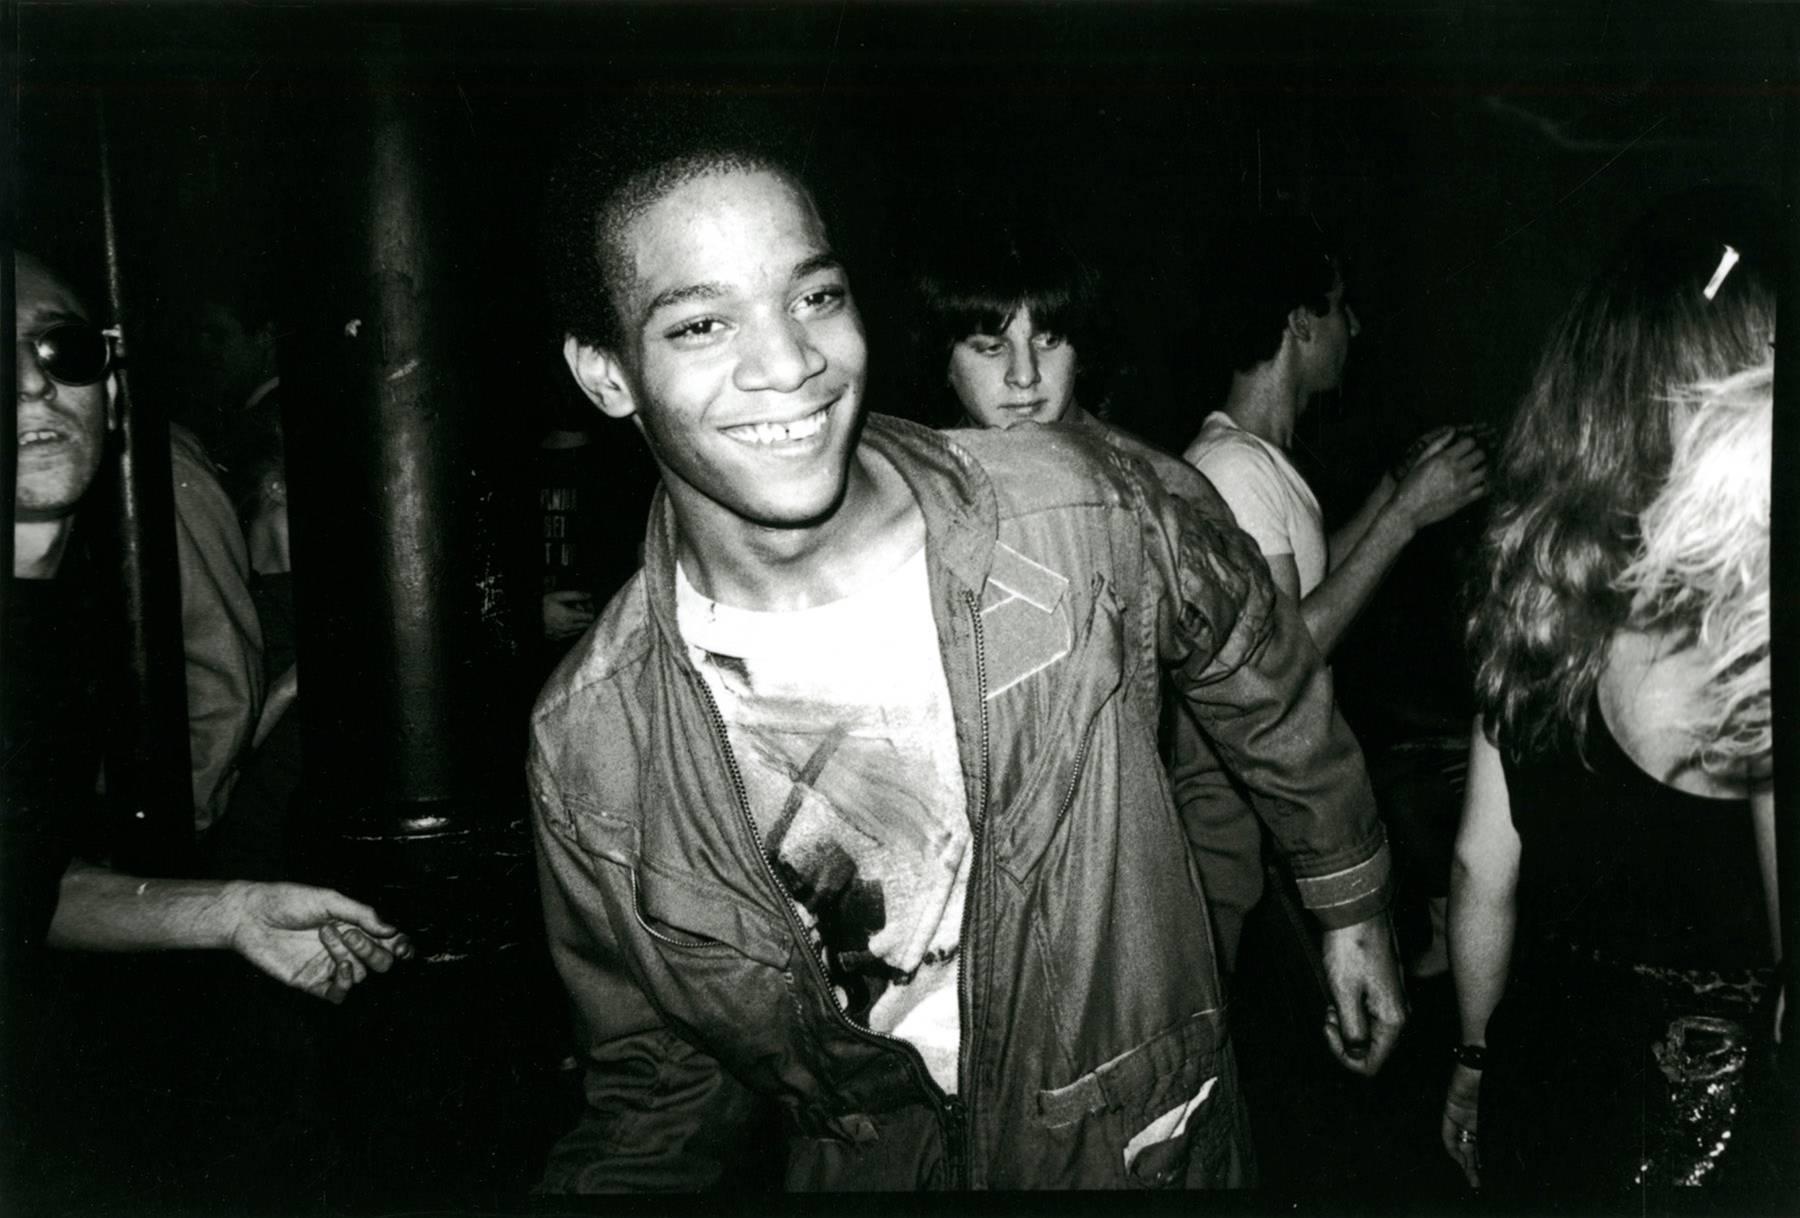 Dancing at The Mudd Club von Jean-Michel Basquiat (Basquiat Boom für Real) – Photograph von Nicholas Taylor